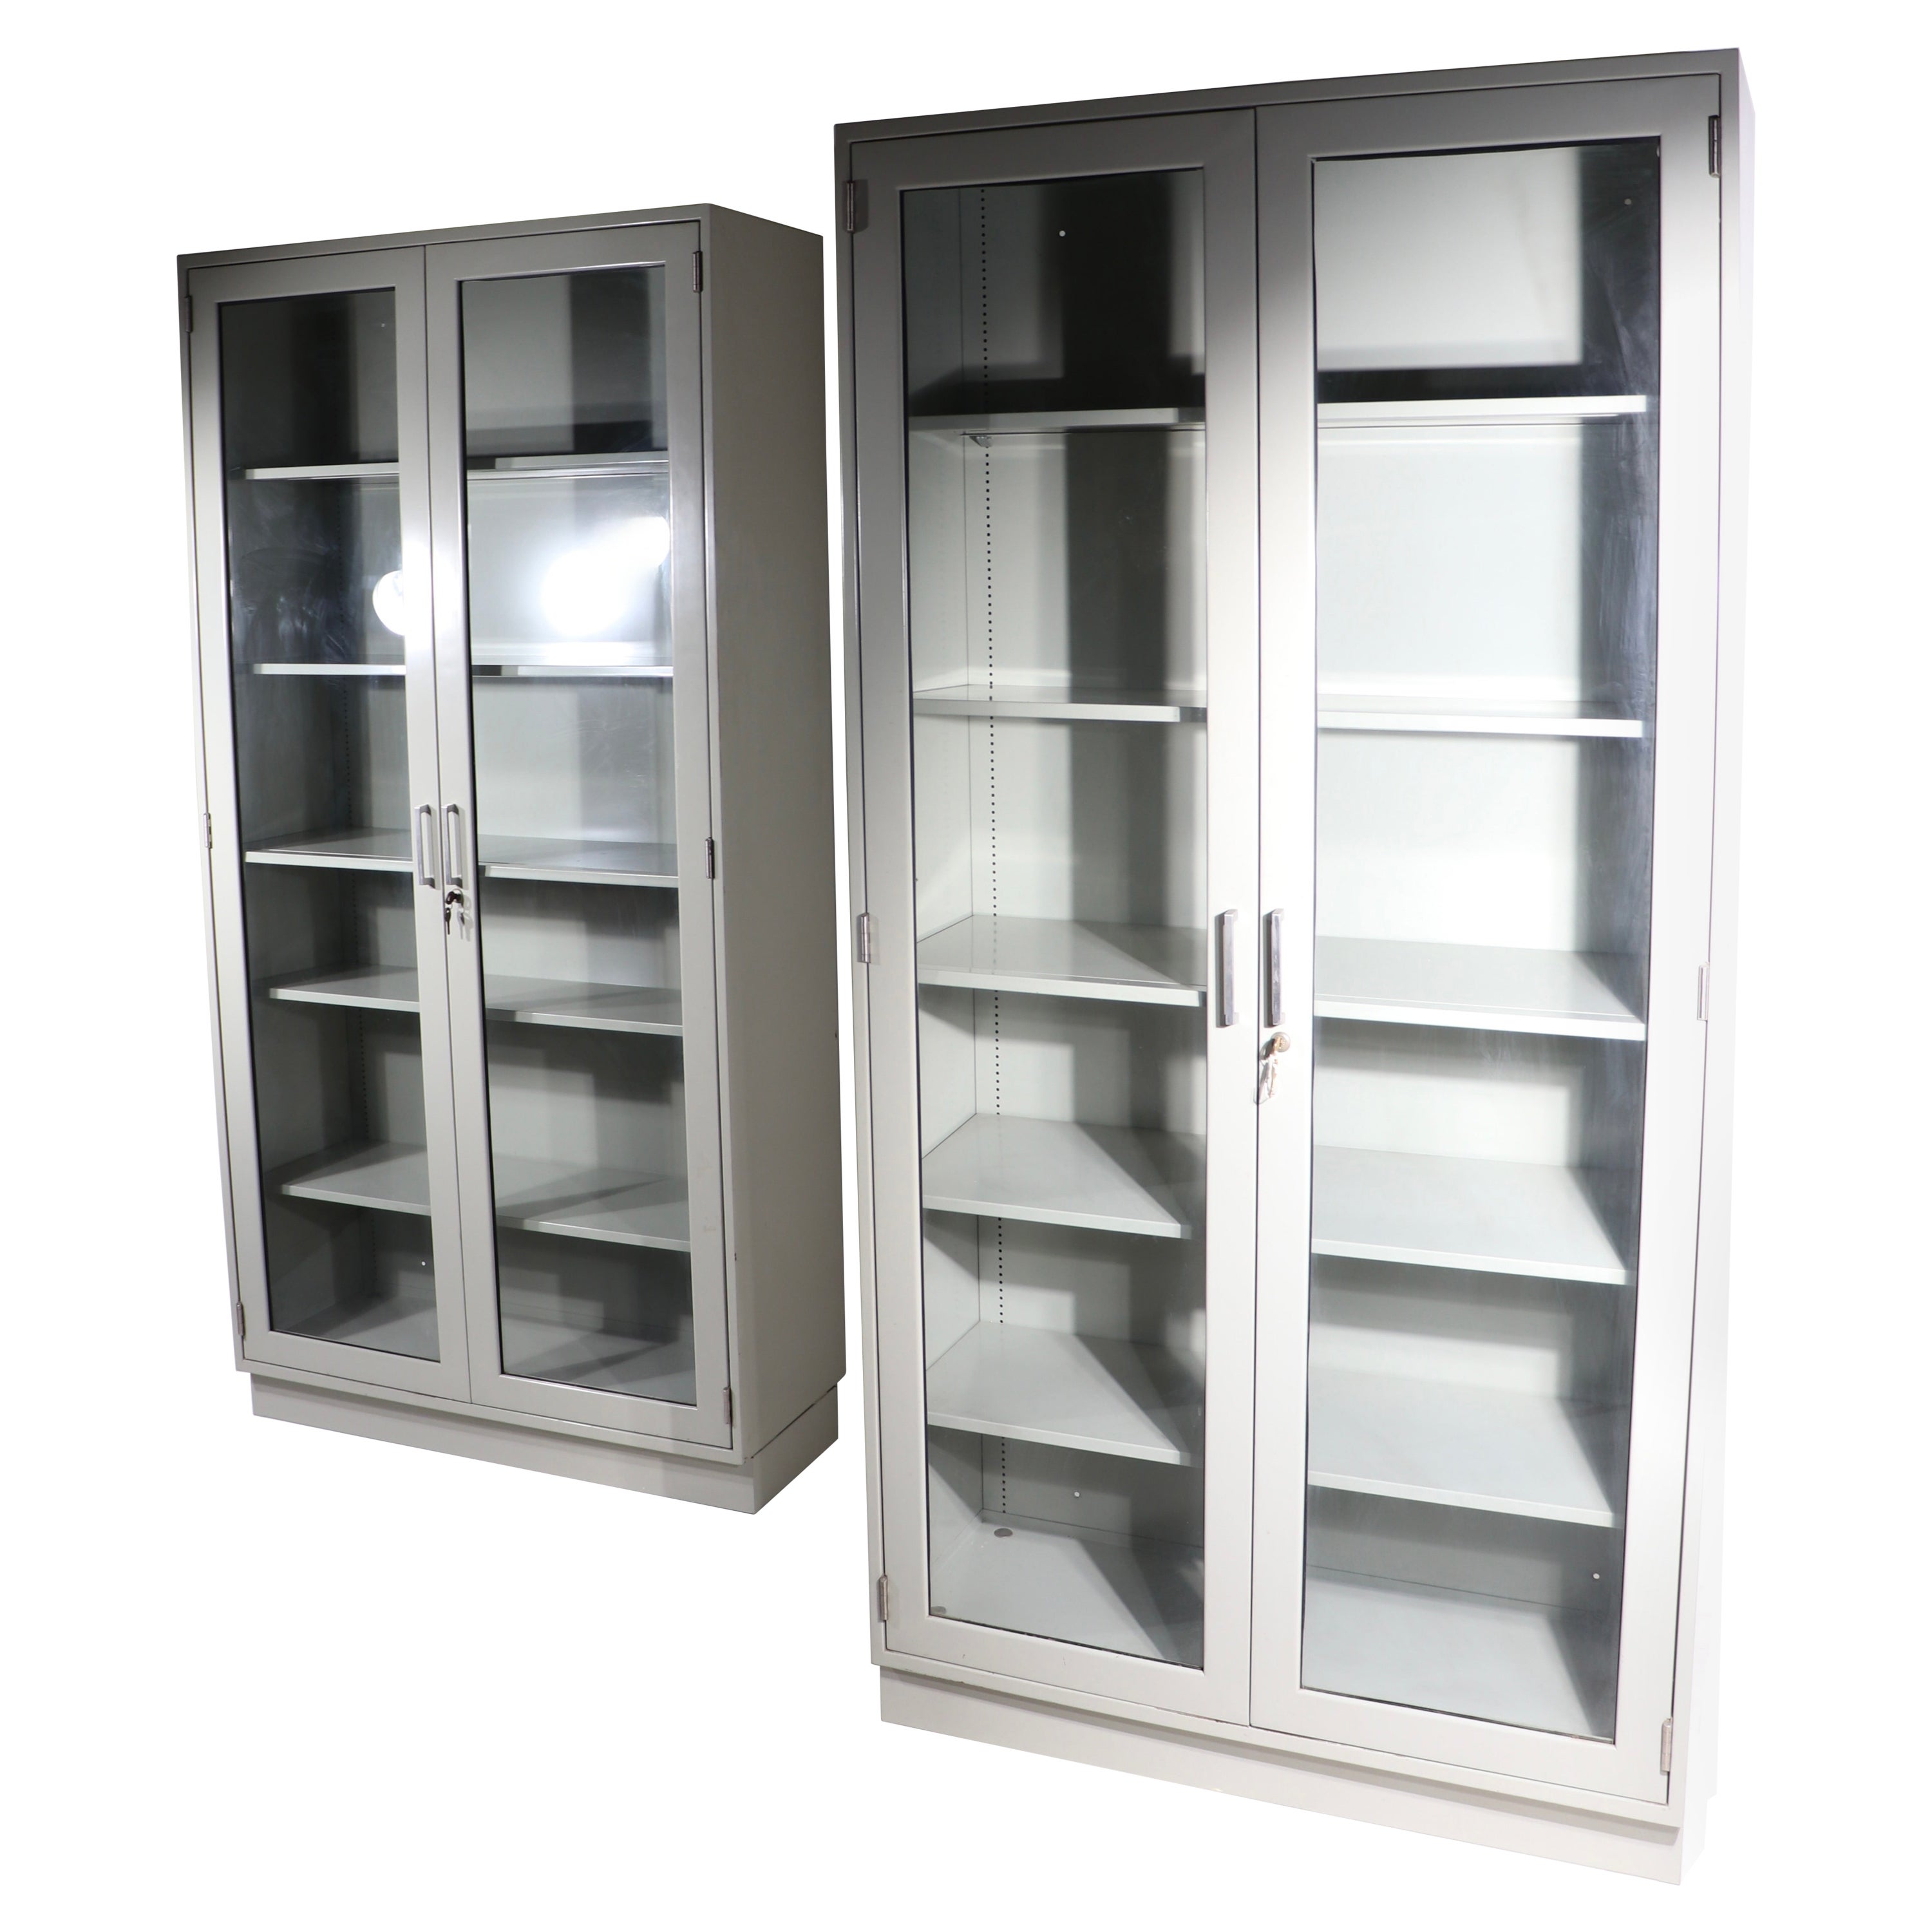 2 Steel Industrial Commercial Glass Door Display Storage Cases